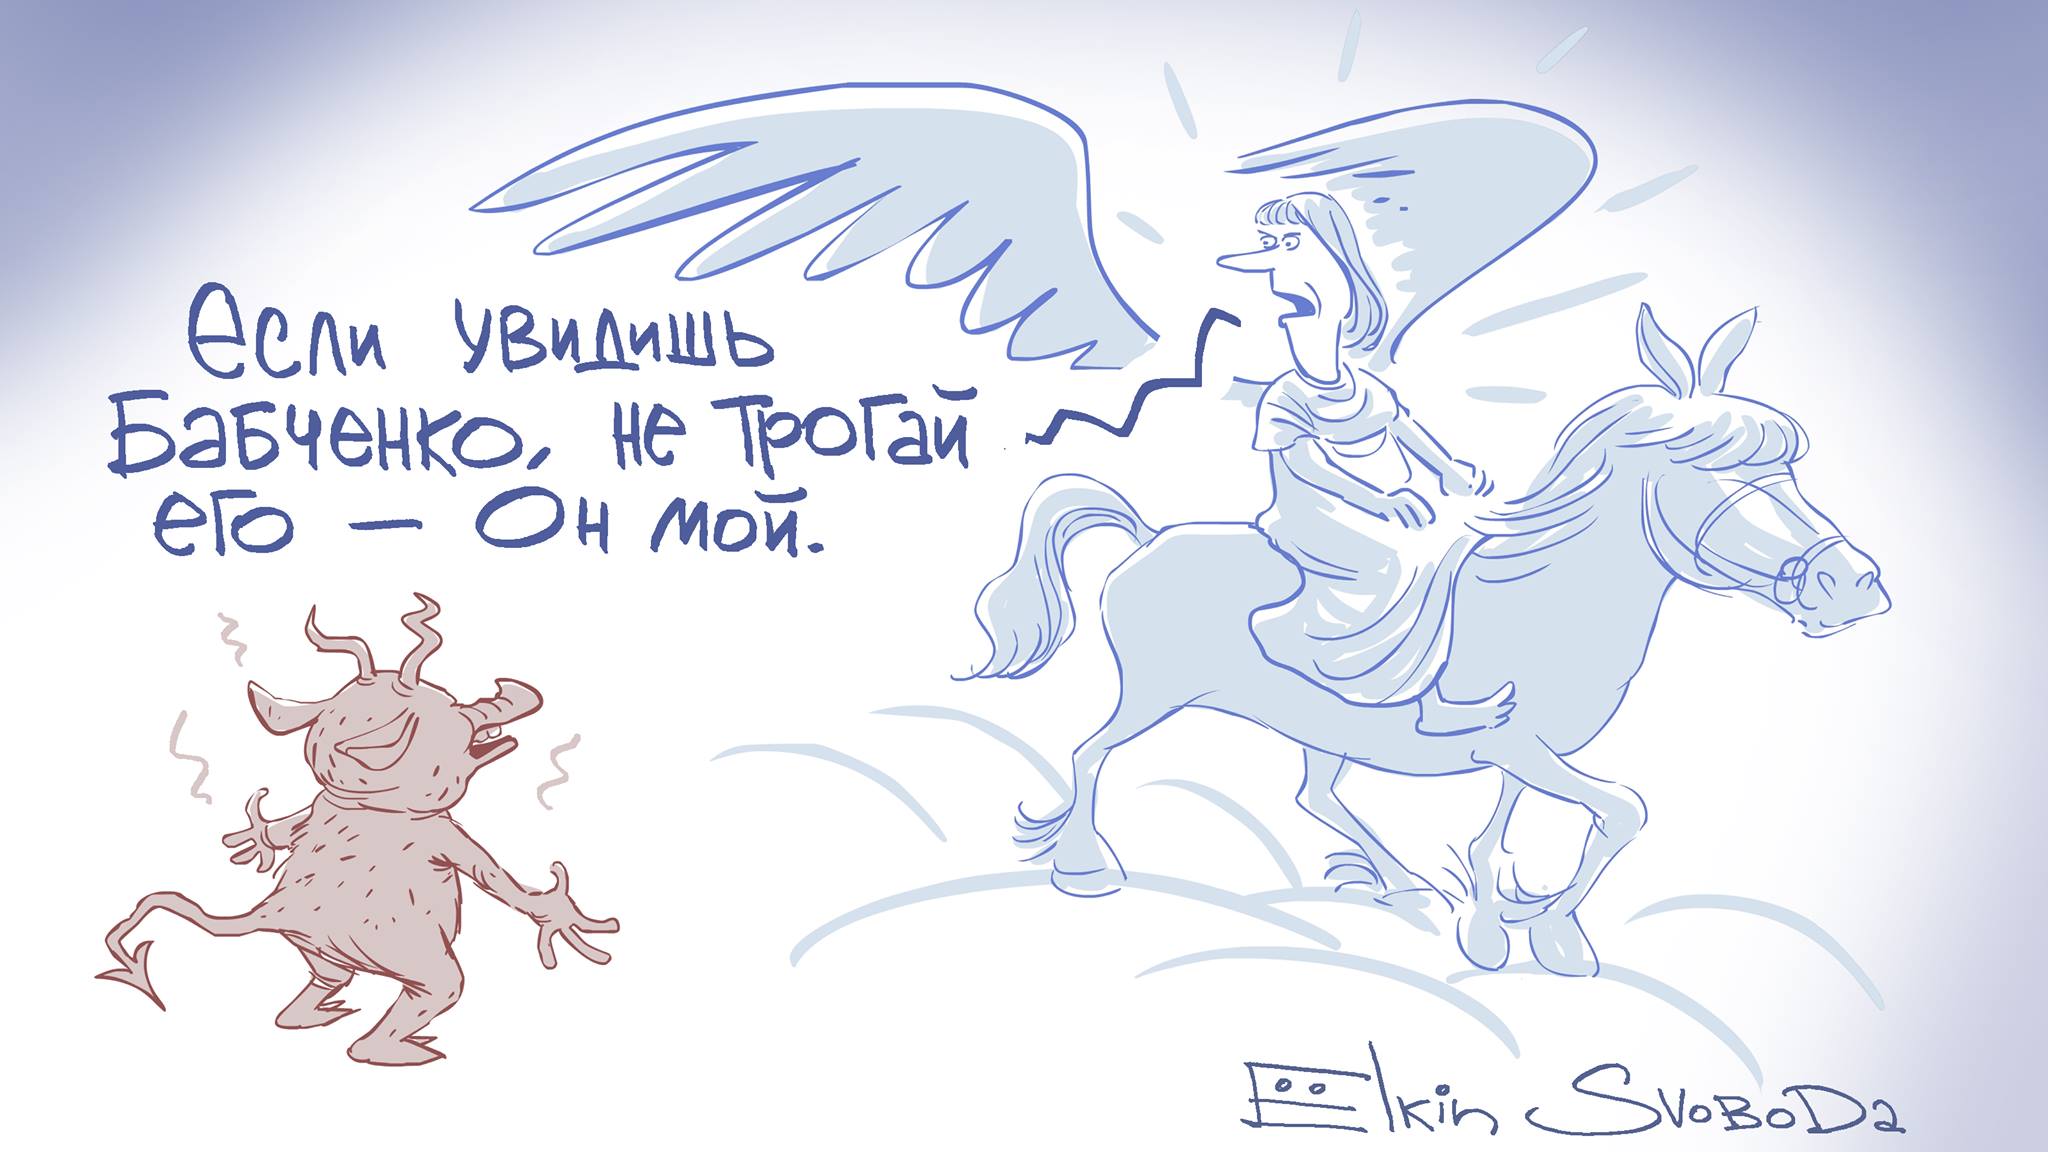 Библейские мотивы: "смерть" и "воскрешение" Бабченко в карикатуре